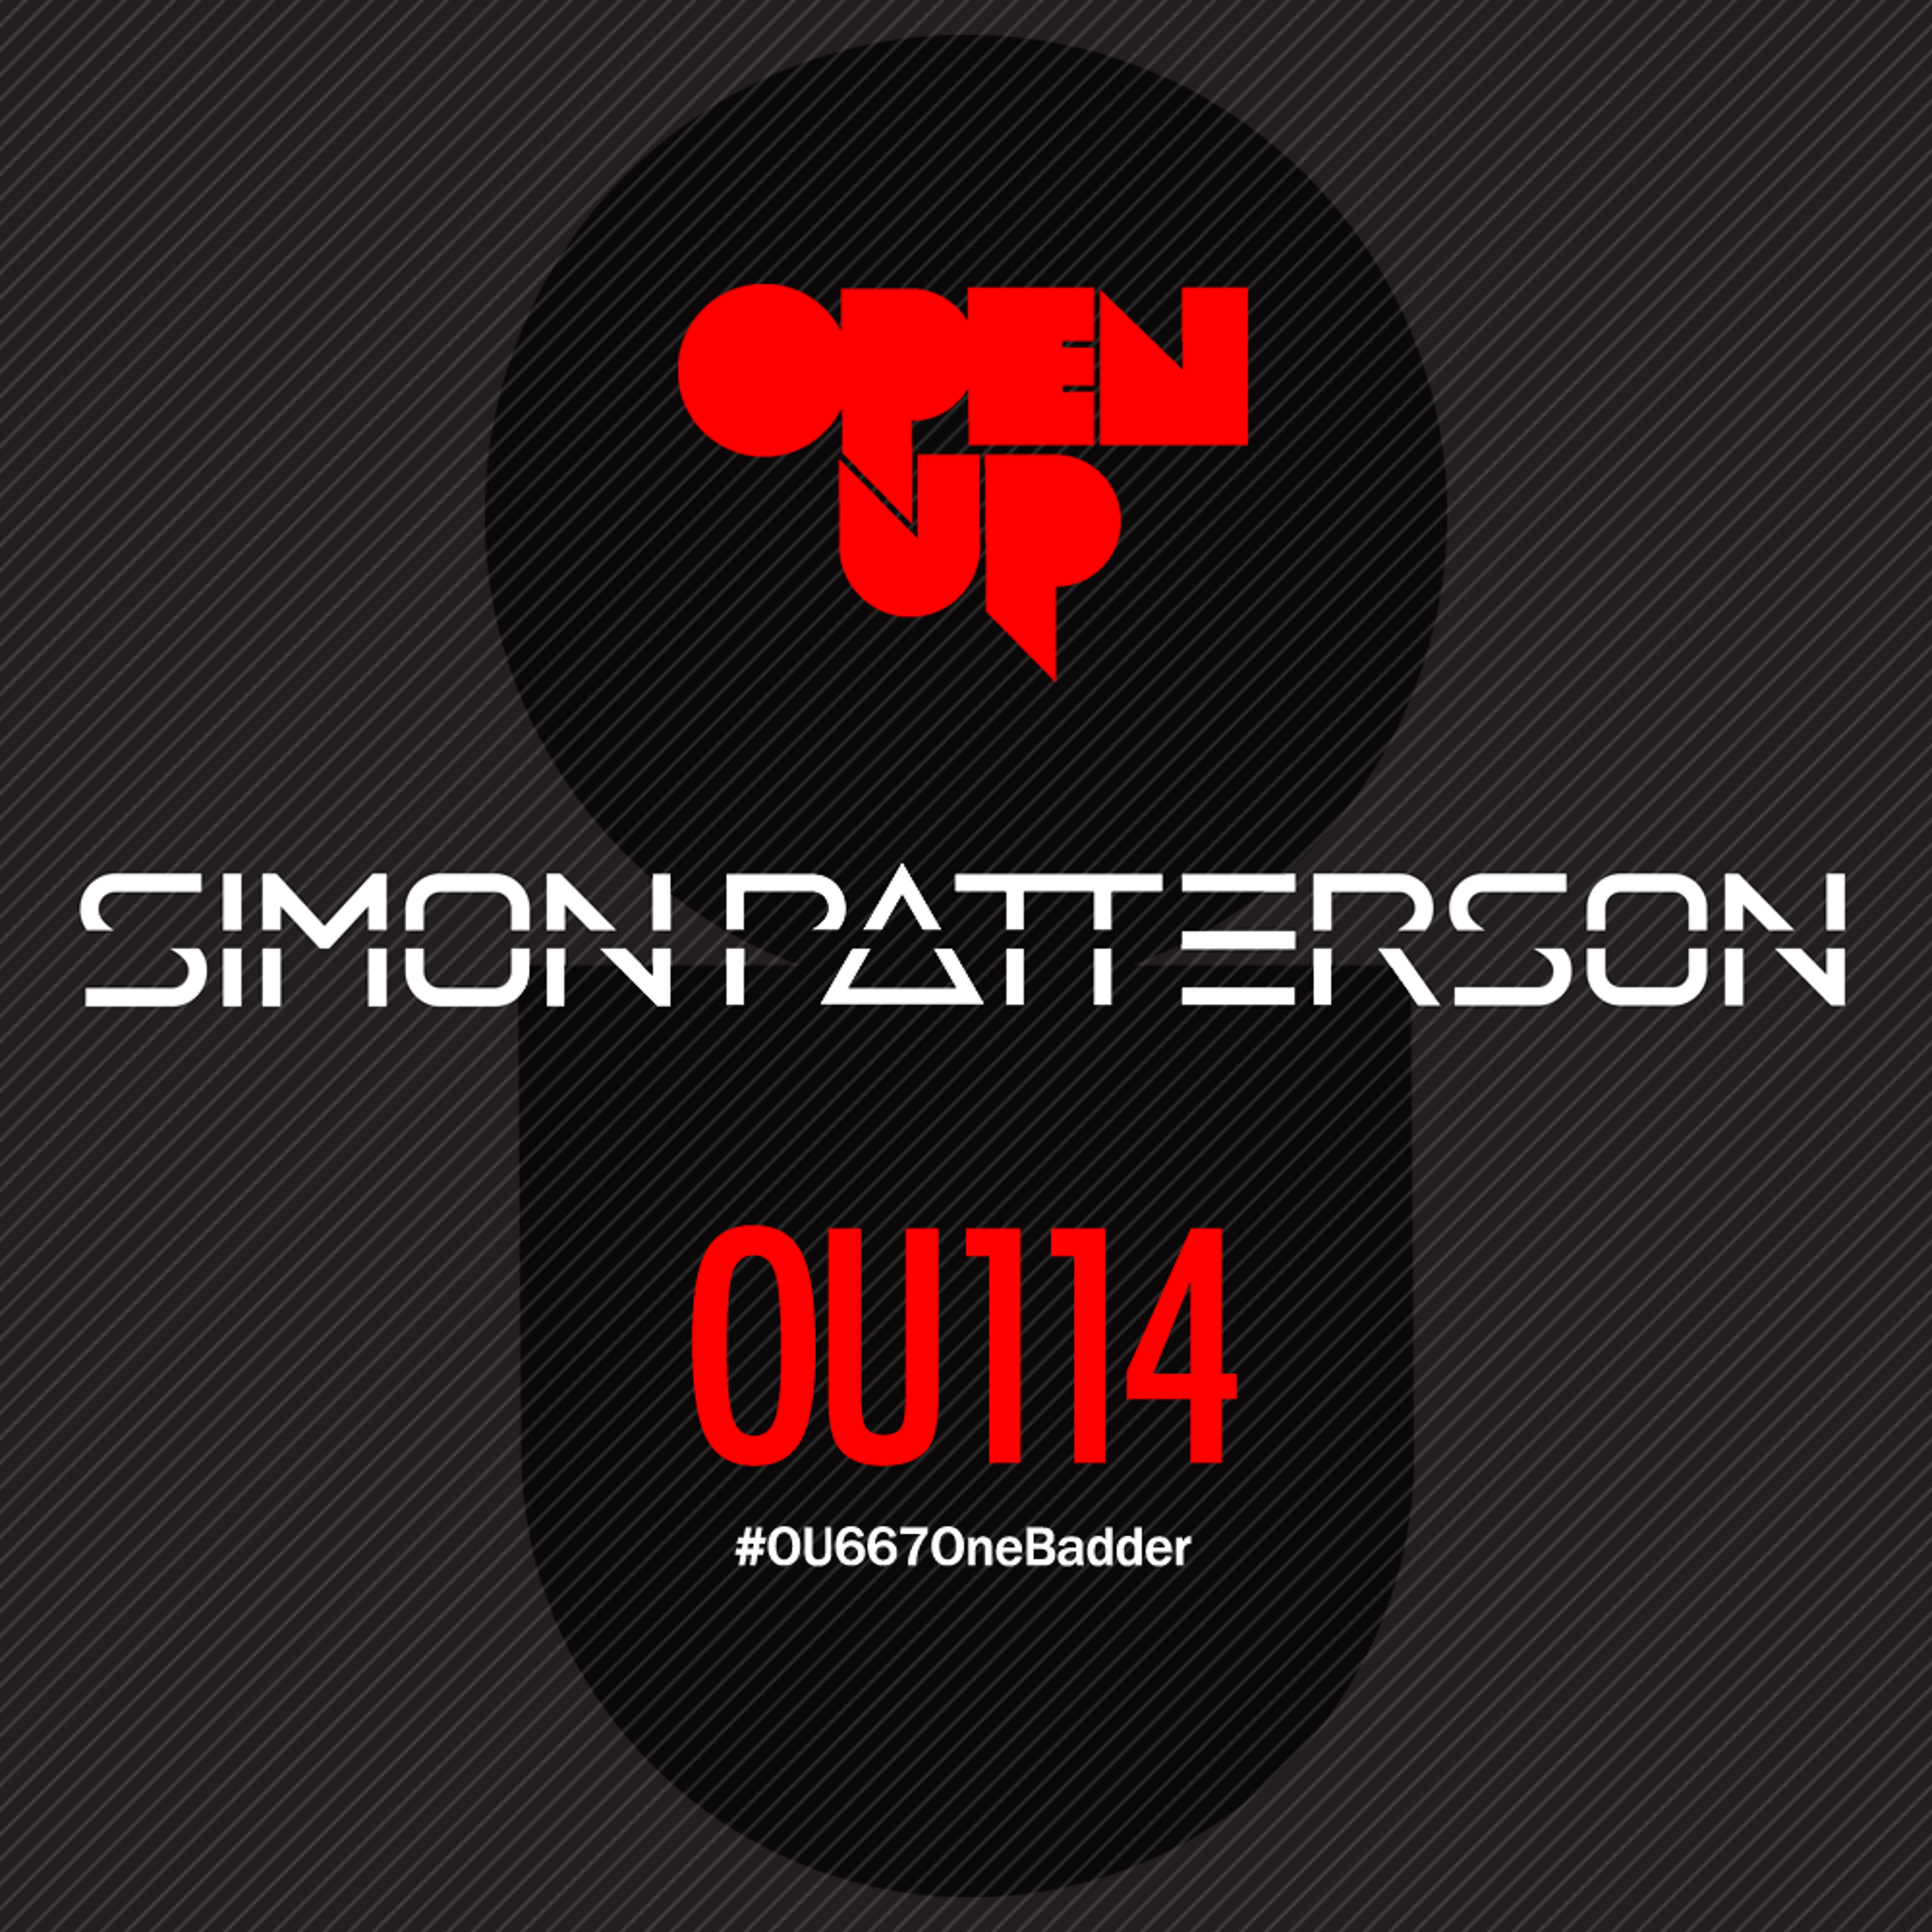 Simon Patterson - Open Up - 114